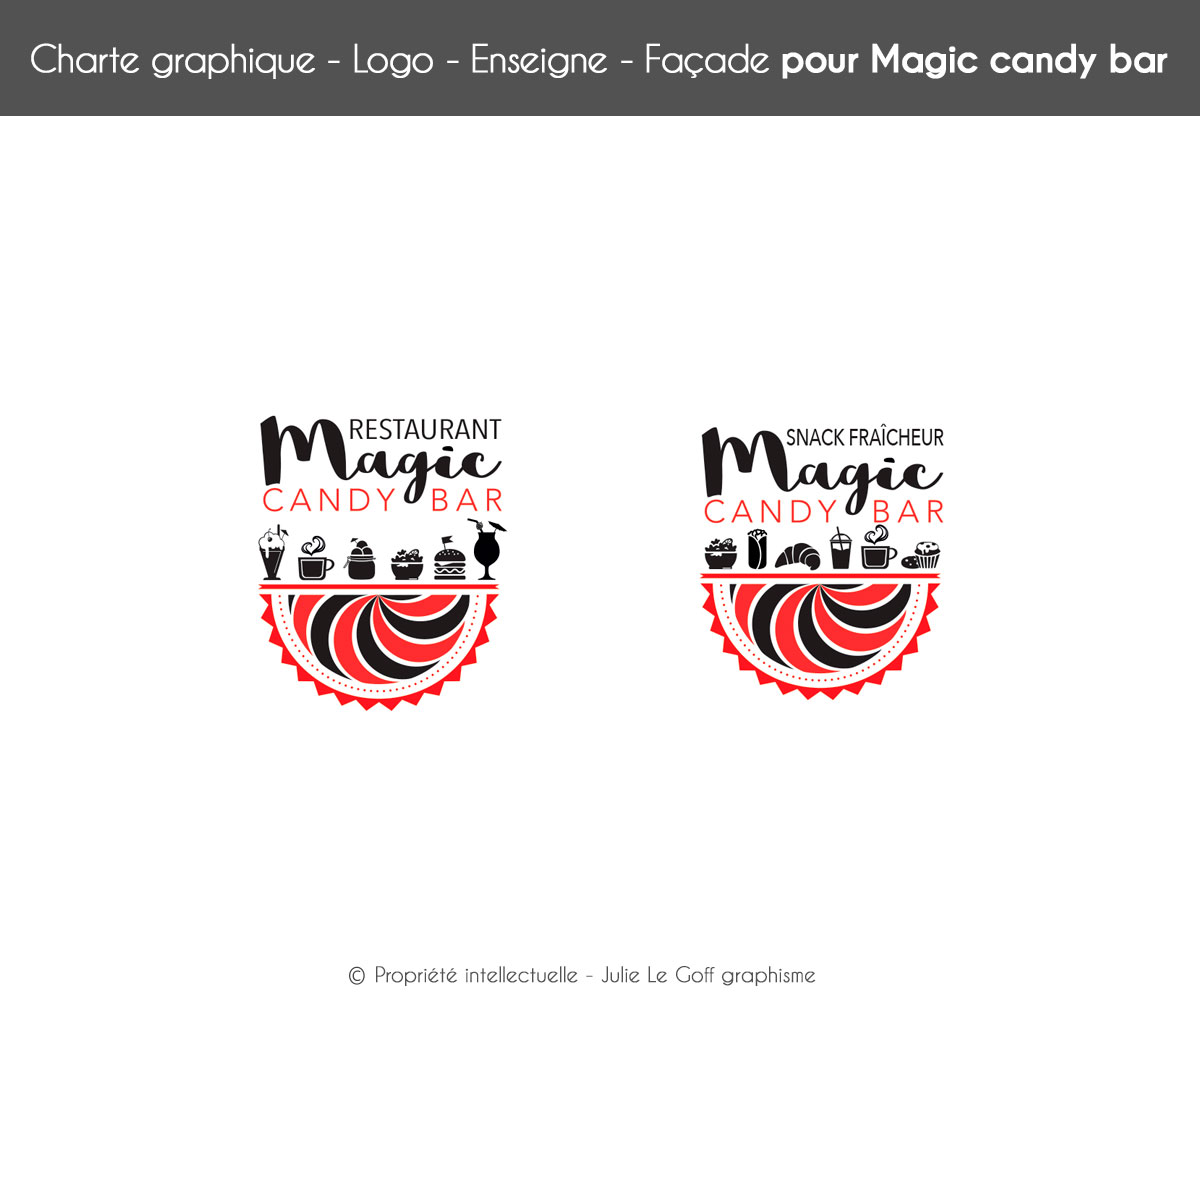 Logos Magic candy bar © Propriété intellectuelle Julie Le Goff